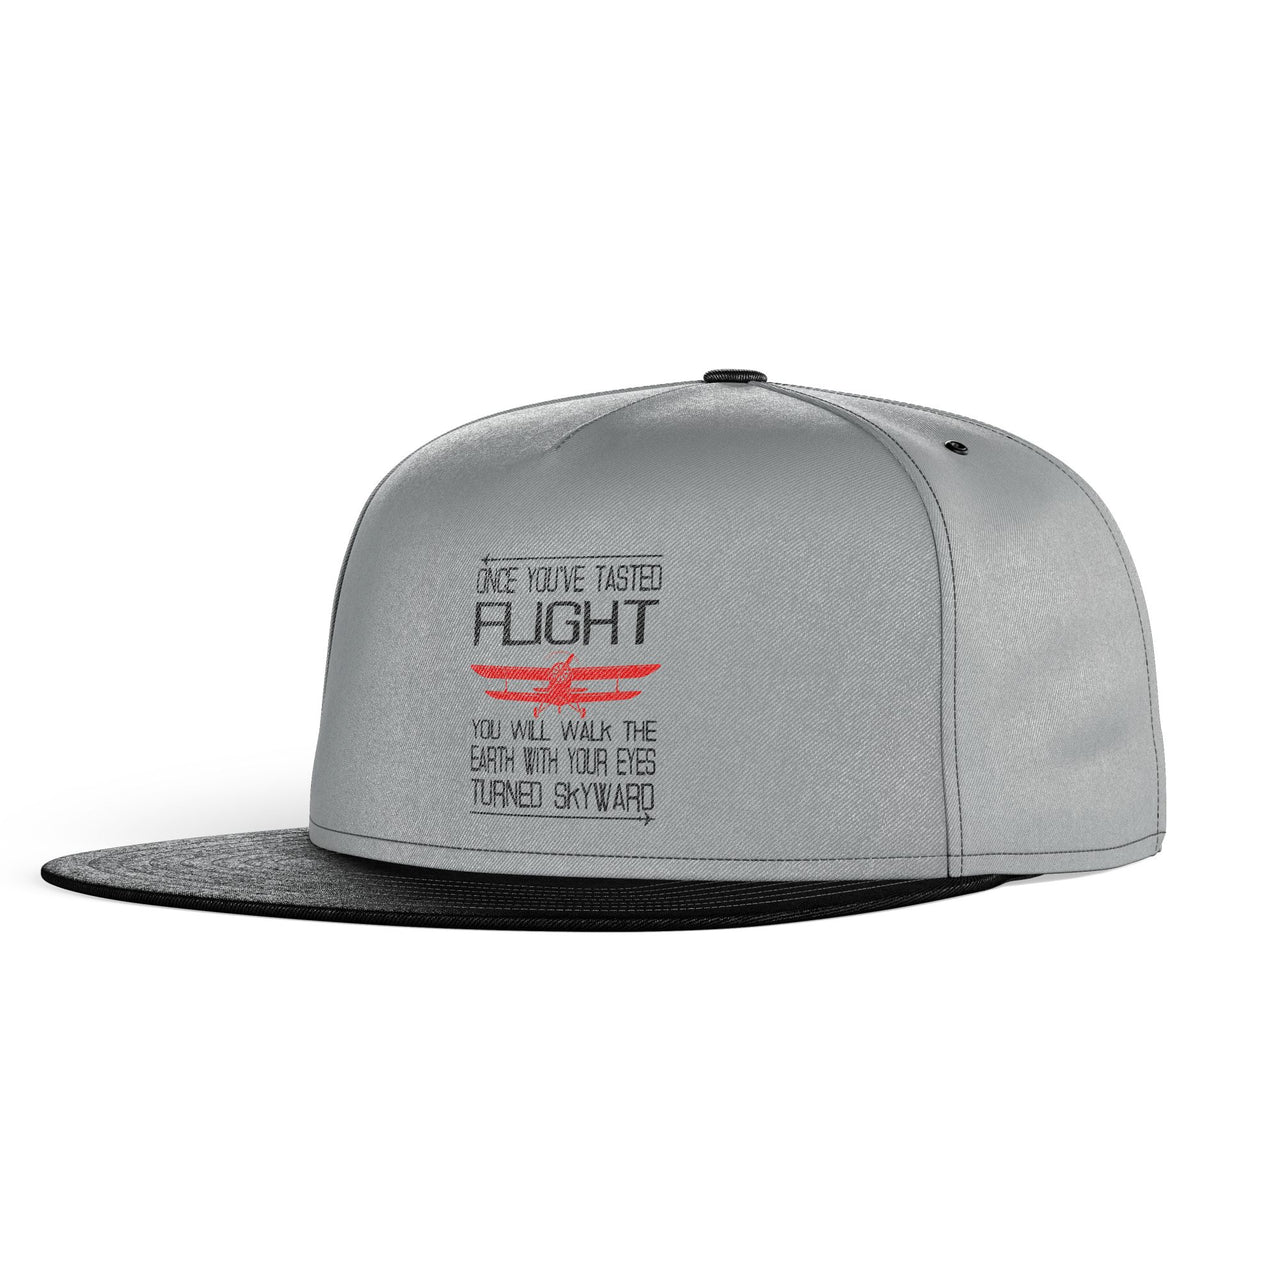 Once You've Tasted Flight Designed Snapback Caps & Hats